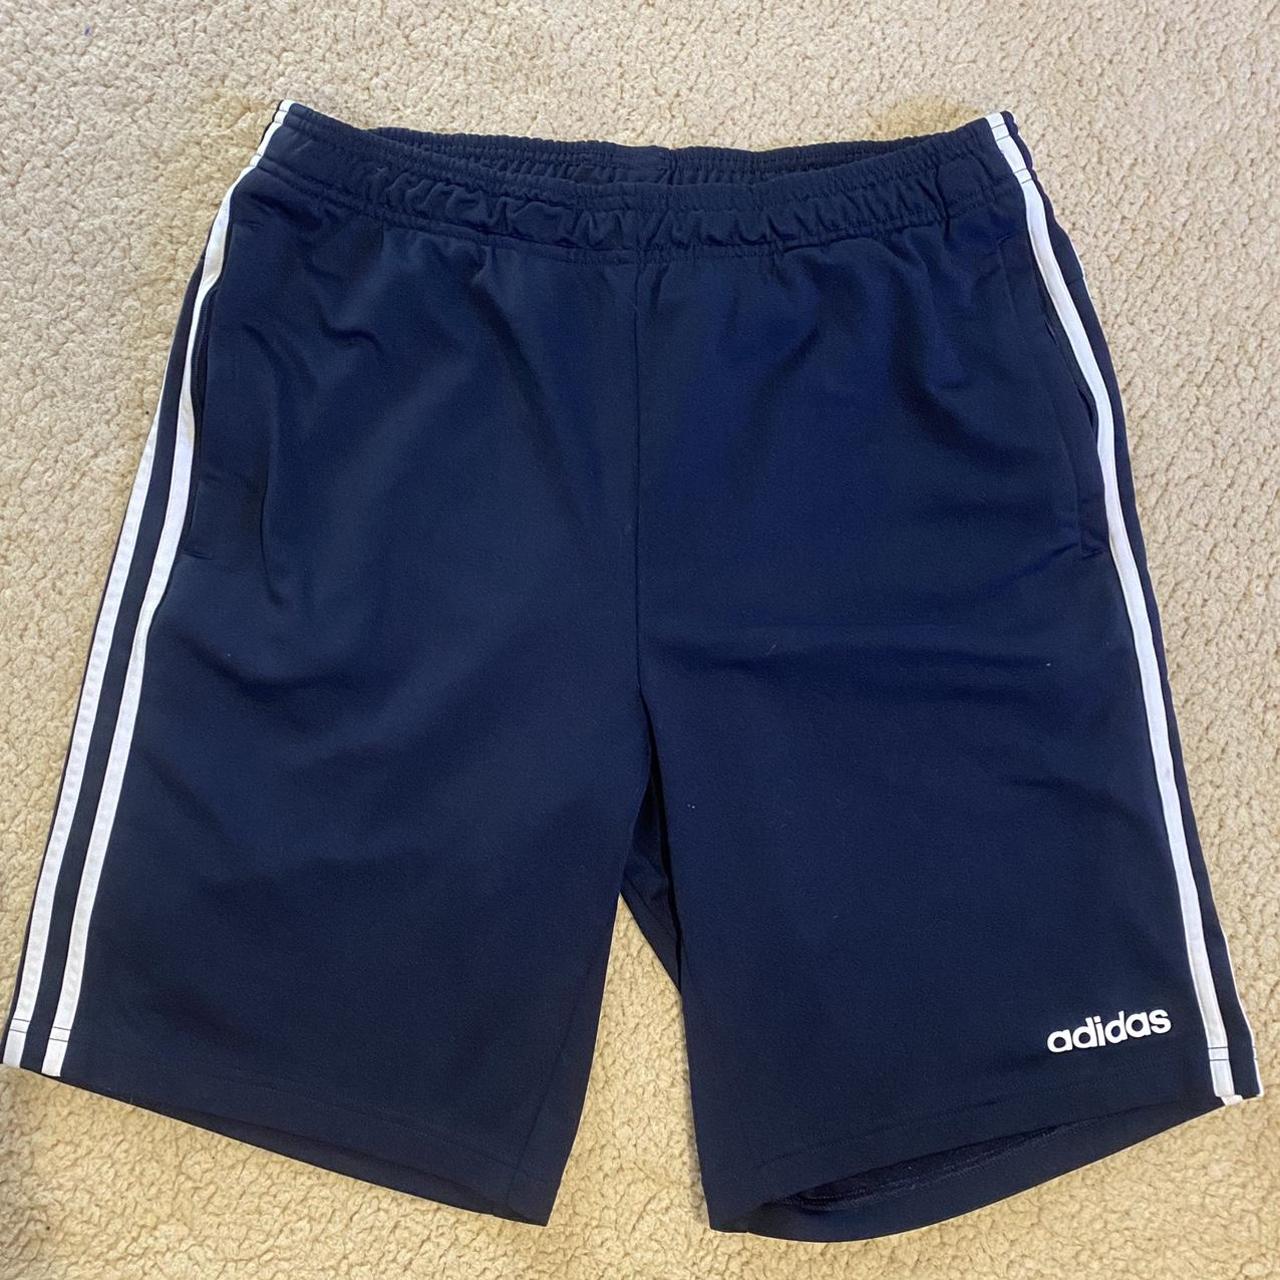 Adidas Men's Navy Shorts | Depop